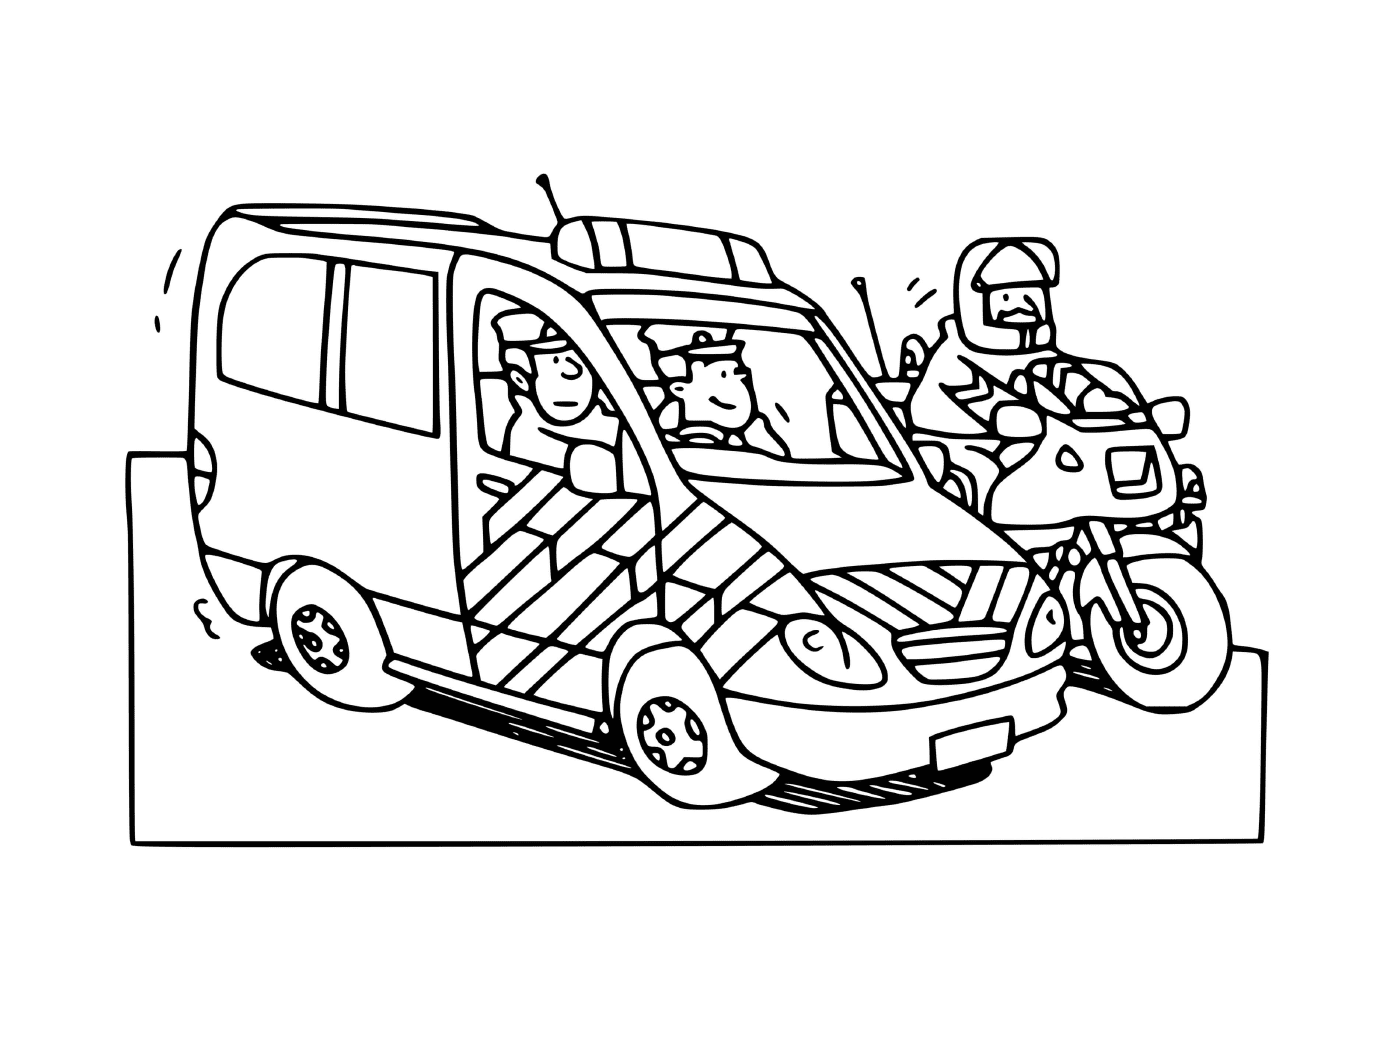  Французский полицейский автомобиль с полицейским мотоциклом 